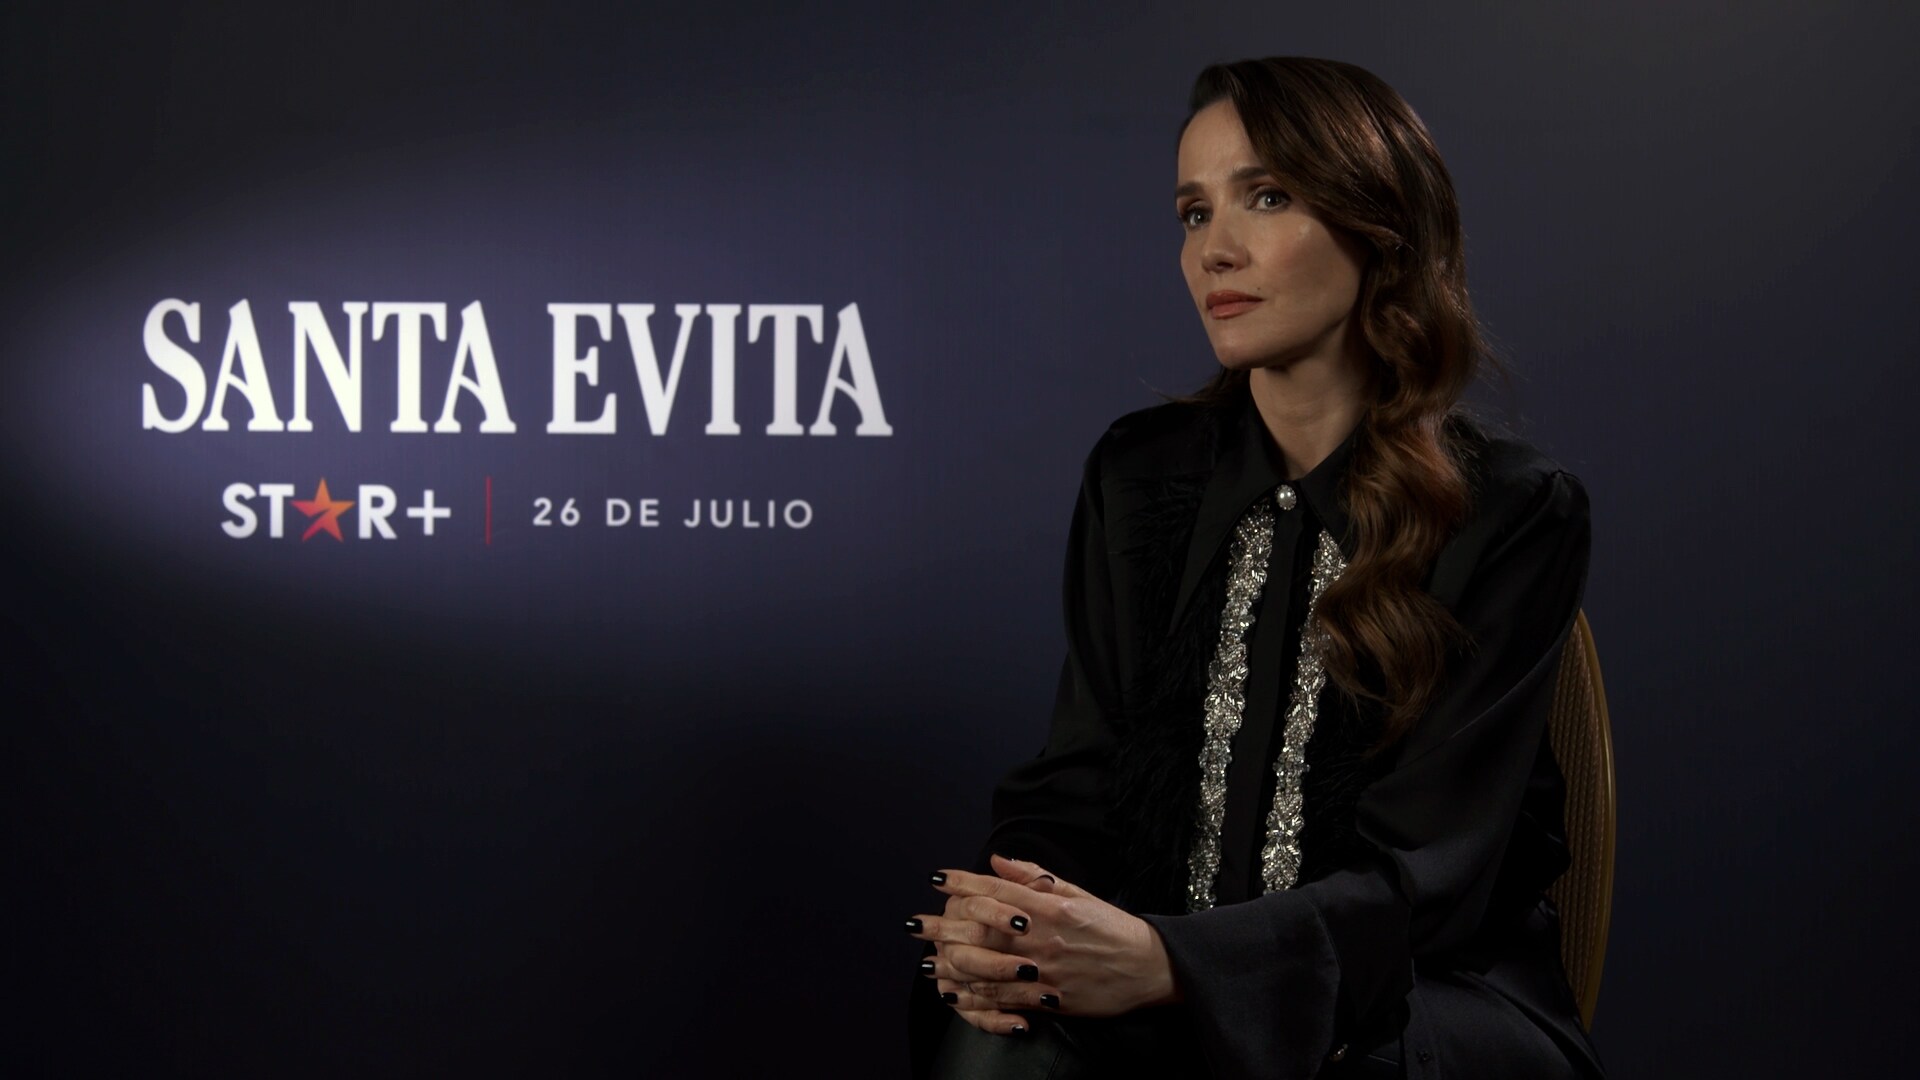 Santa Evita | Eva Perón: Natalia Oreiro reflete sobre seu aprendizado após filmar a série | Star+